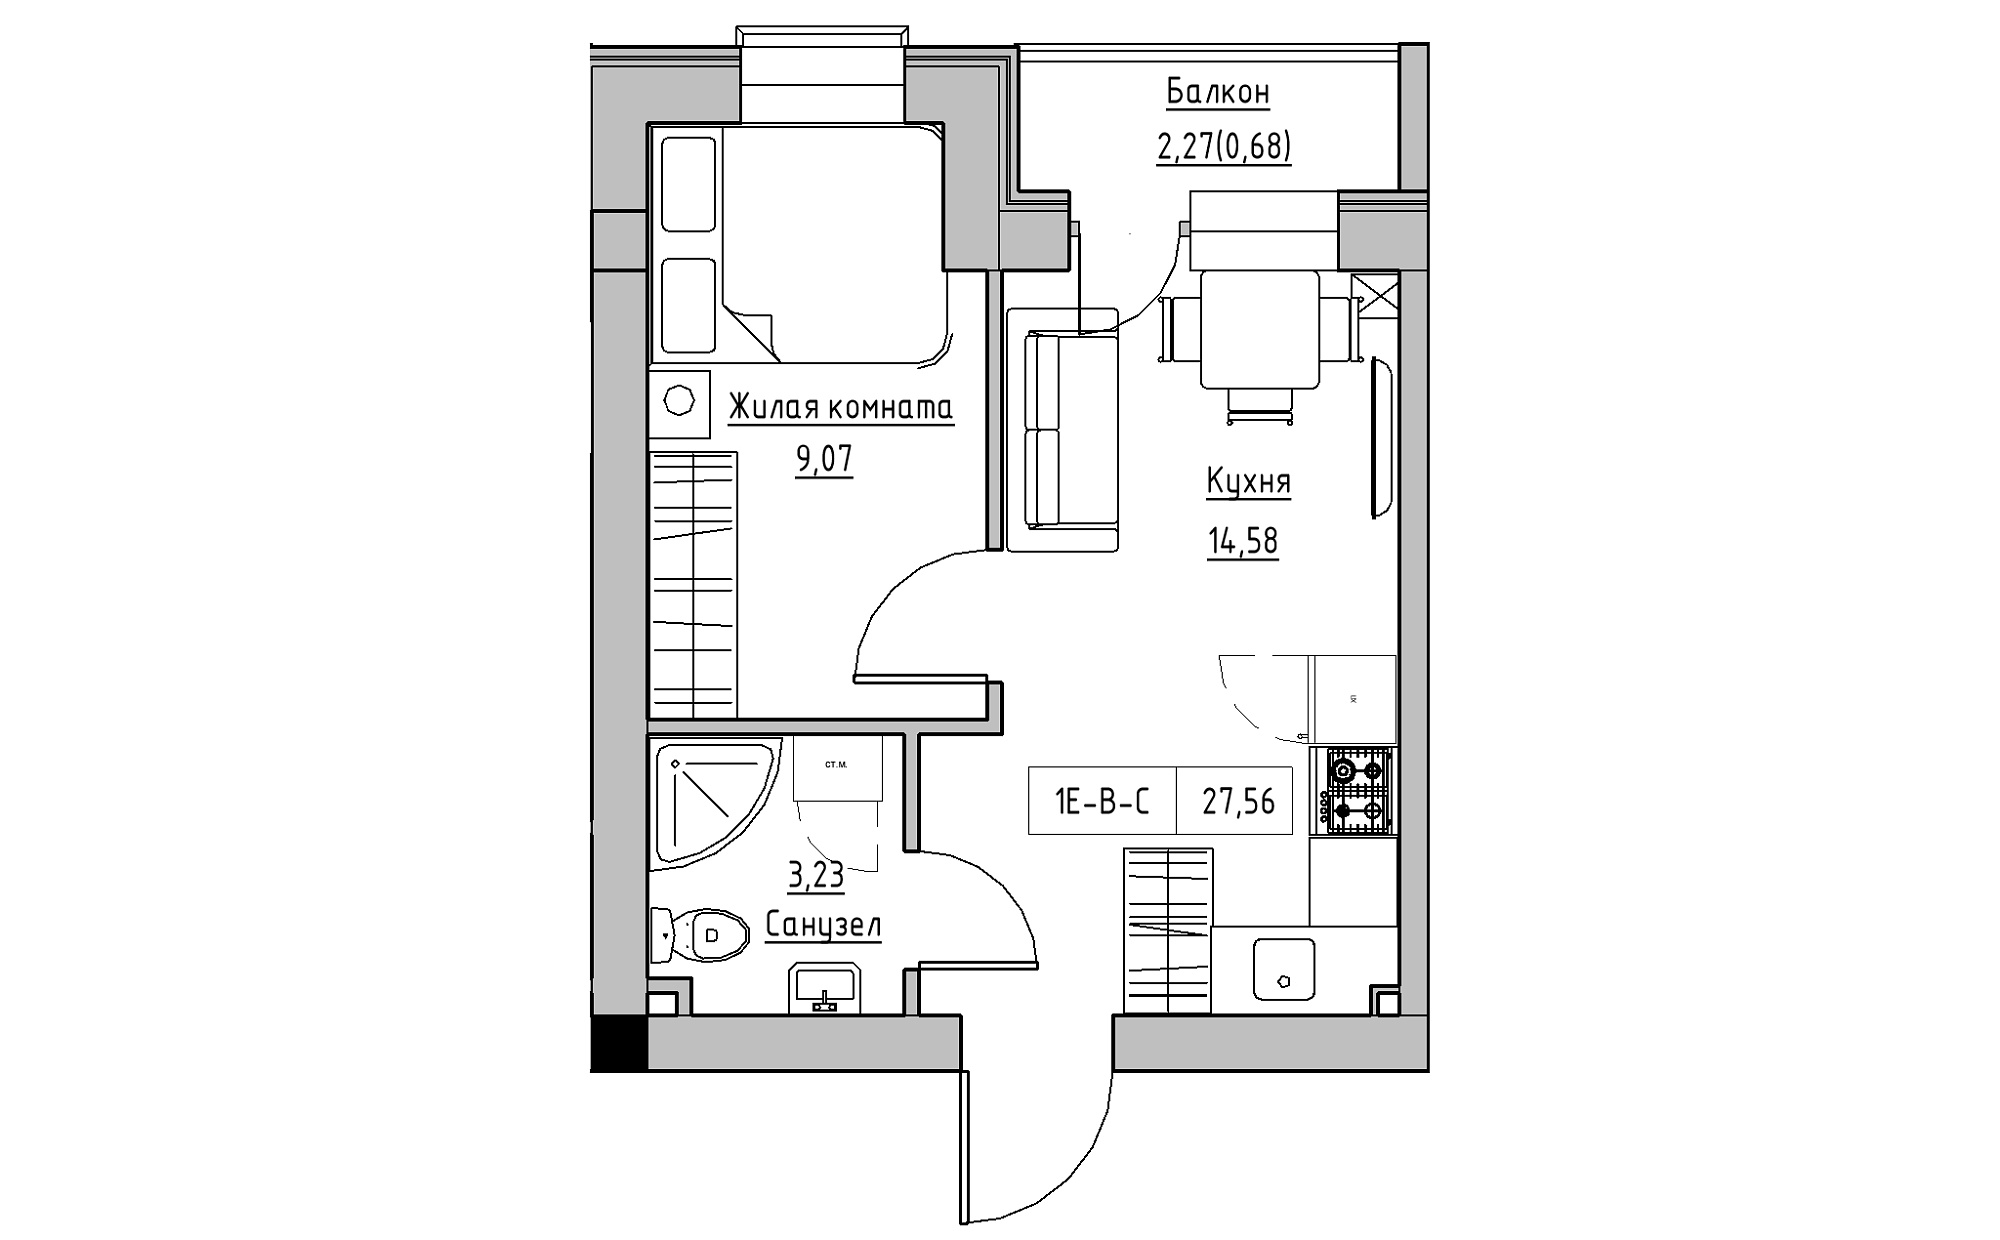 Планування 1-к квартира площею 27.56м2, KS-022-05/0007.